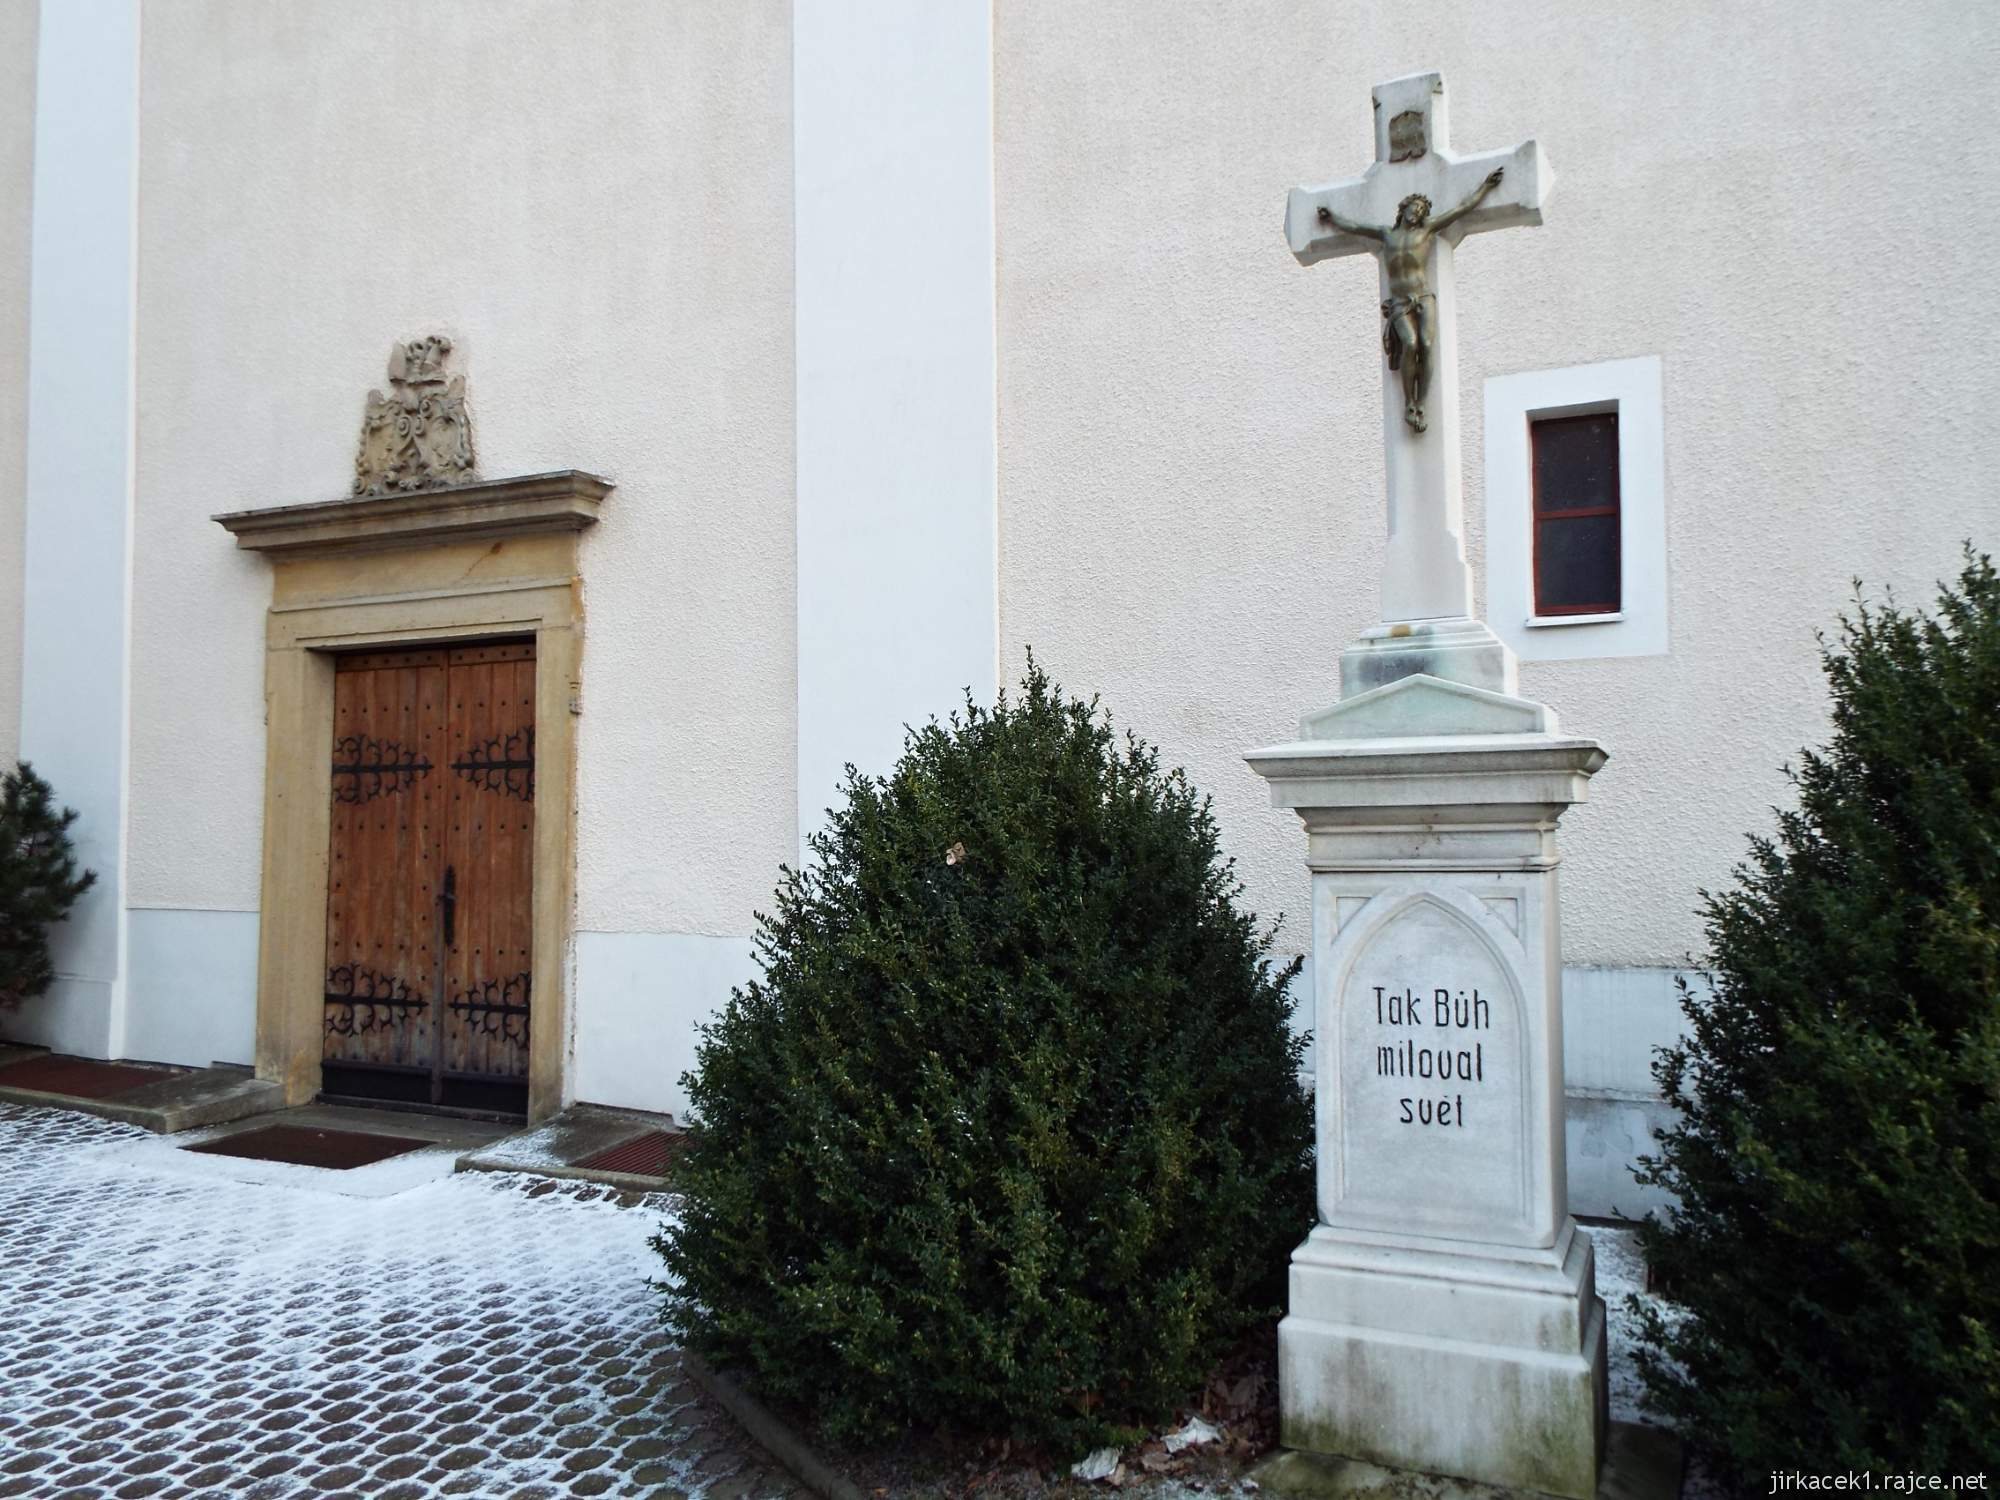 B - kostel Narození Panny Marie Konice 23 - kříž a hlavní vchod